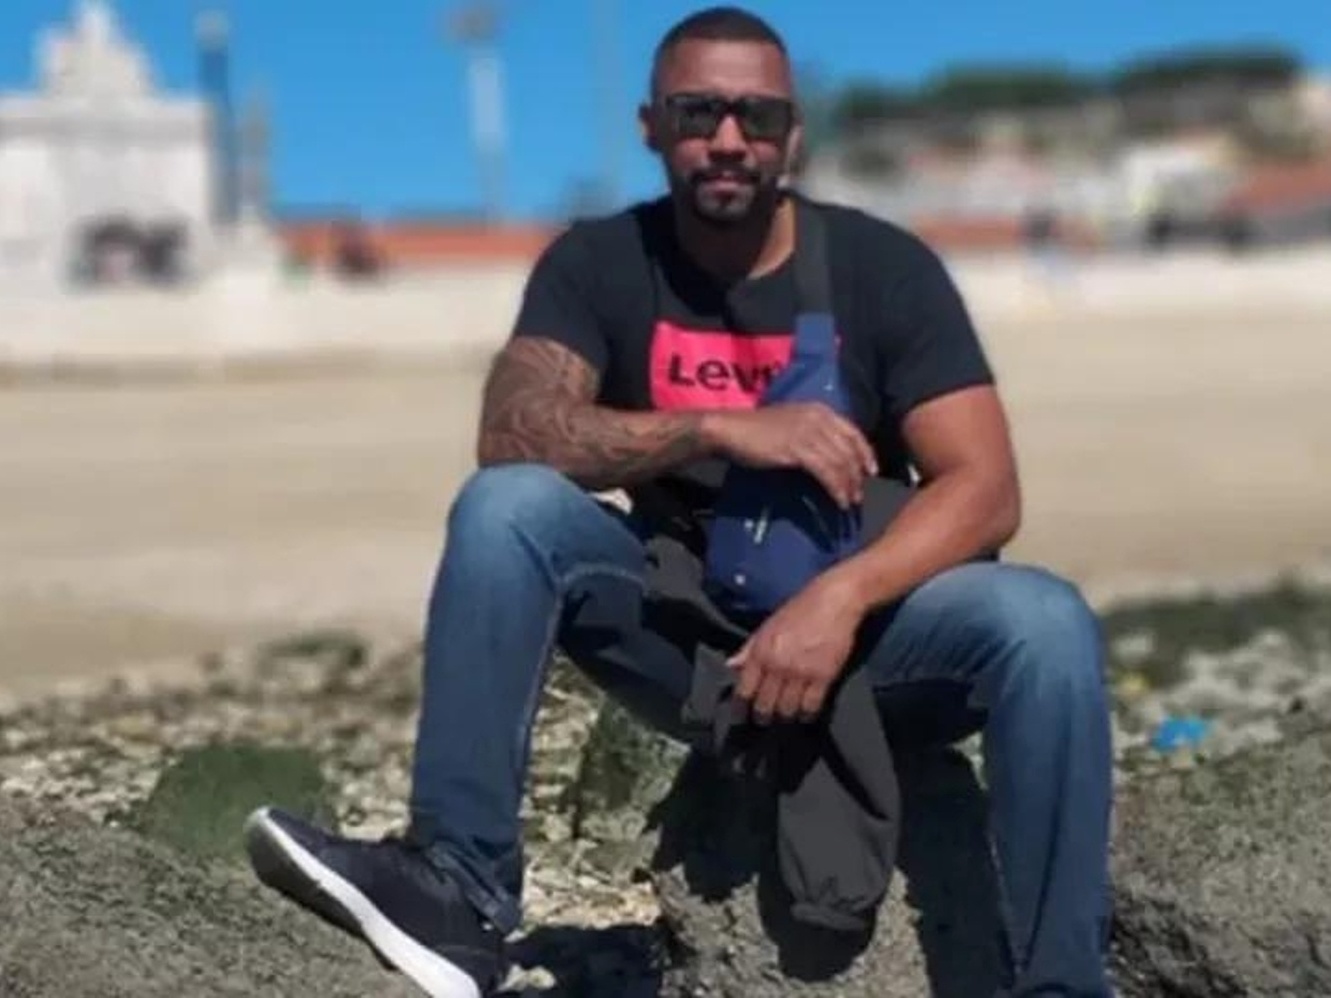 Brasileiro de 33 anos é espancado até morrer em frente a bar em Lisboa